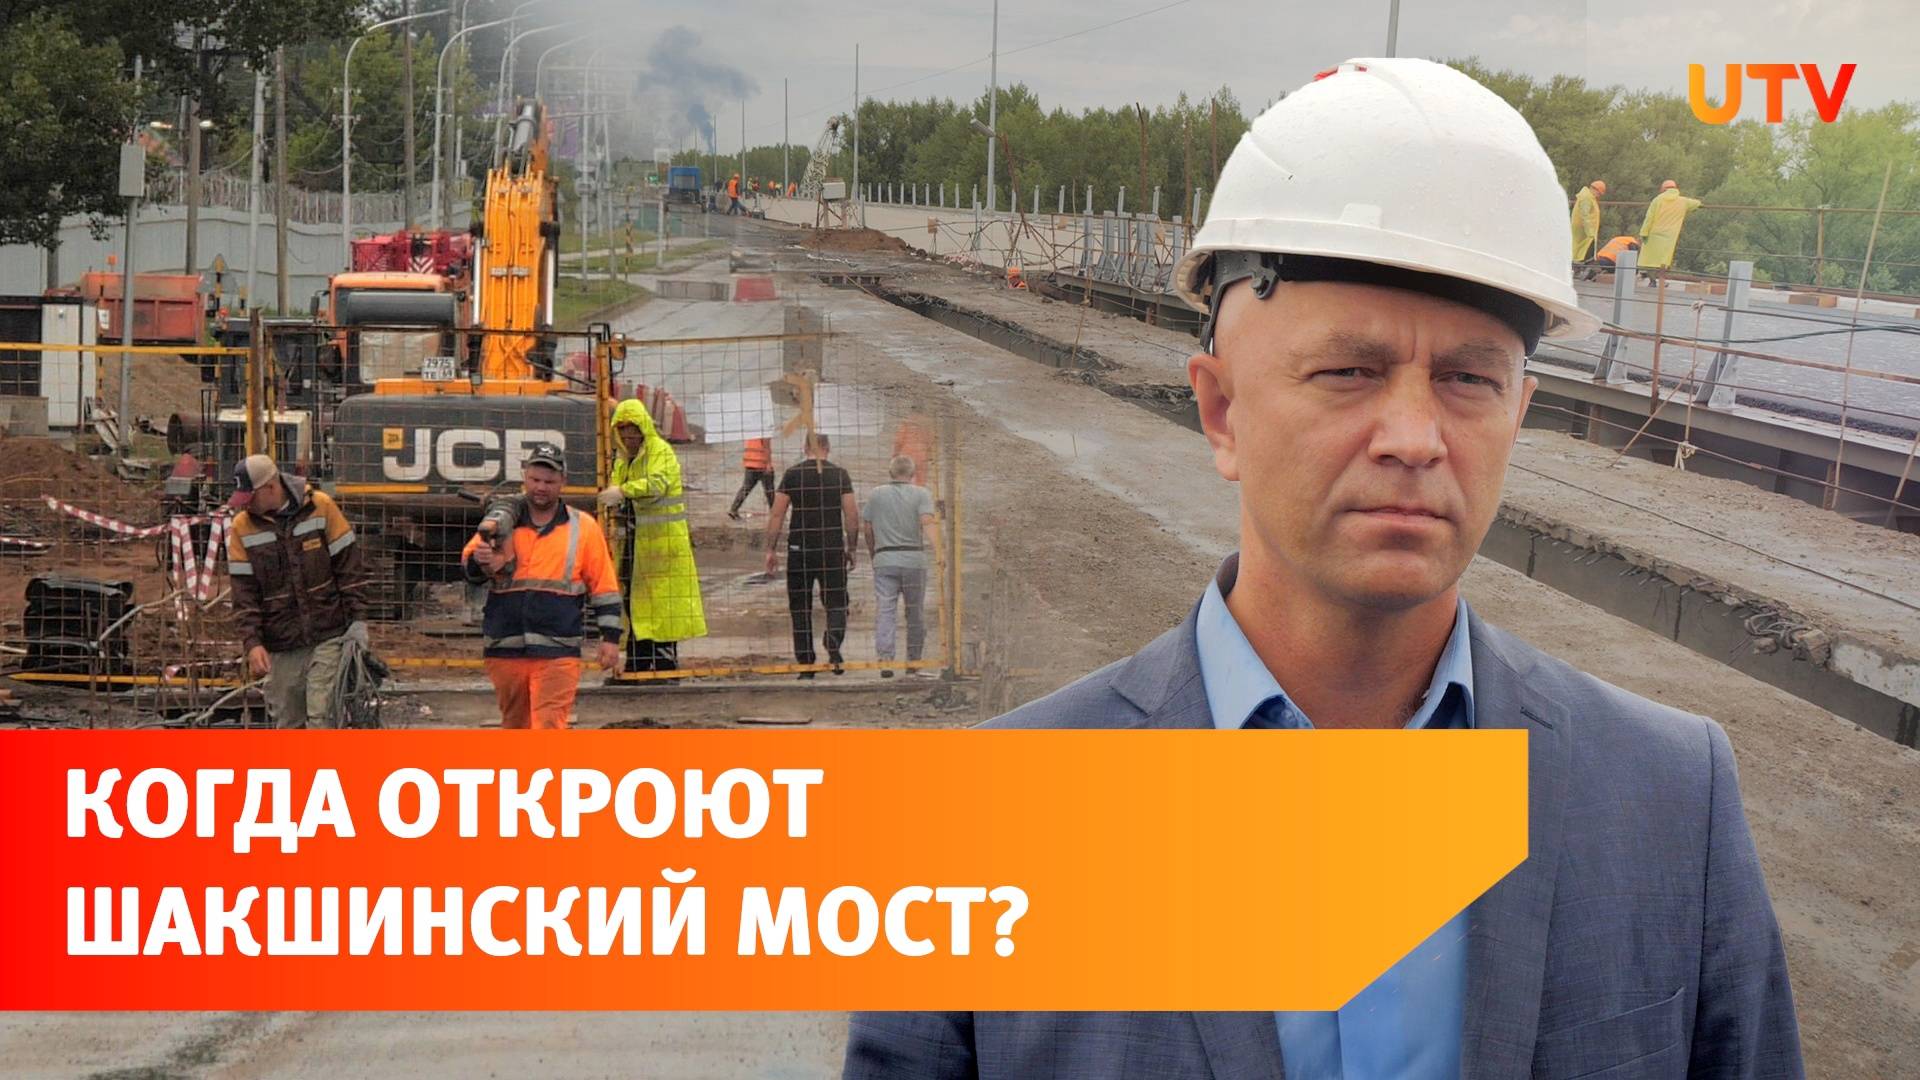 Как проходит реконструкция закрытого Шакшинского моста?